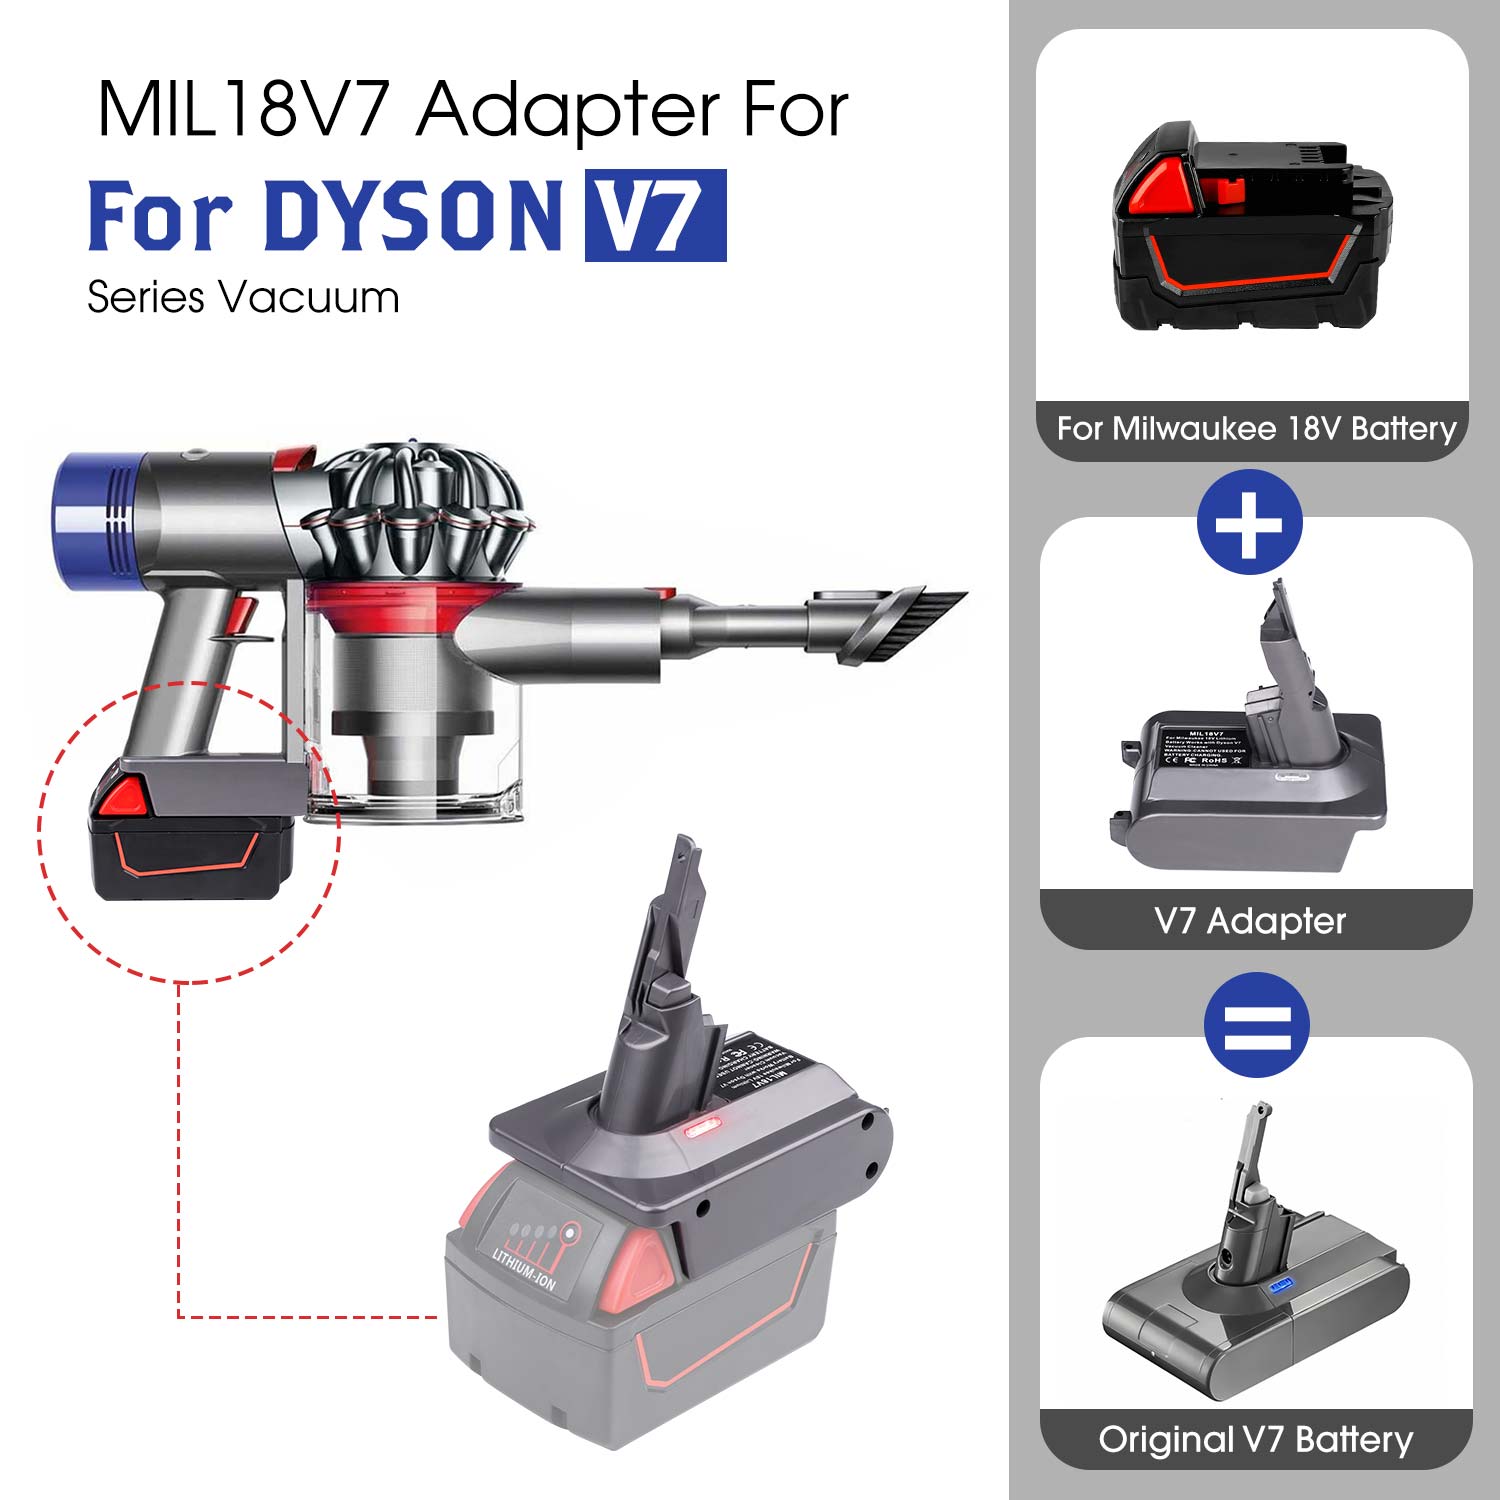 Per a l'adaptador Dyson V7 per al convertidor de bateria de liti Milwaukee M18 18V a Dyson V7, s'utilitza per a l'aspiradora Dyson V7